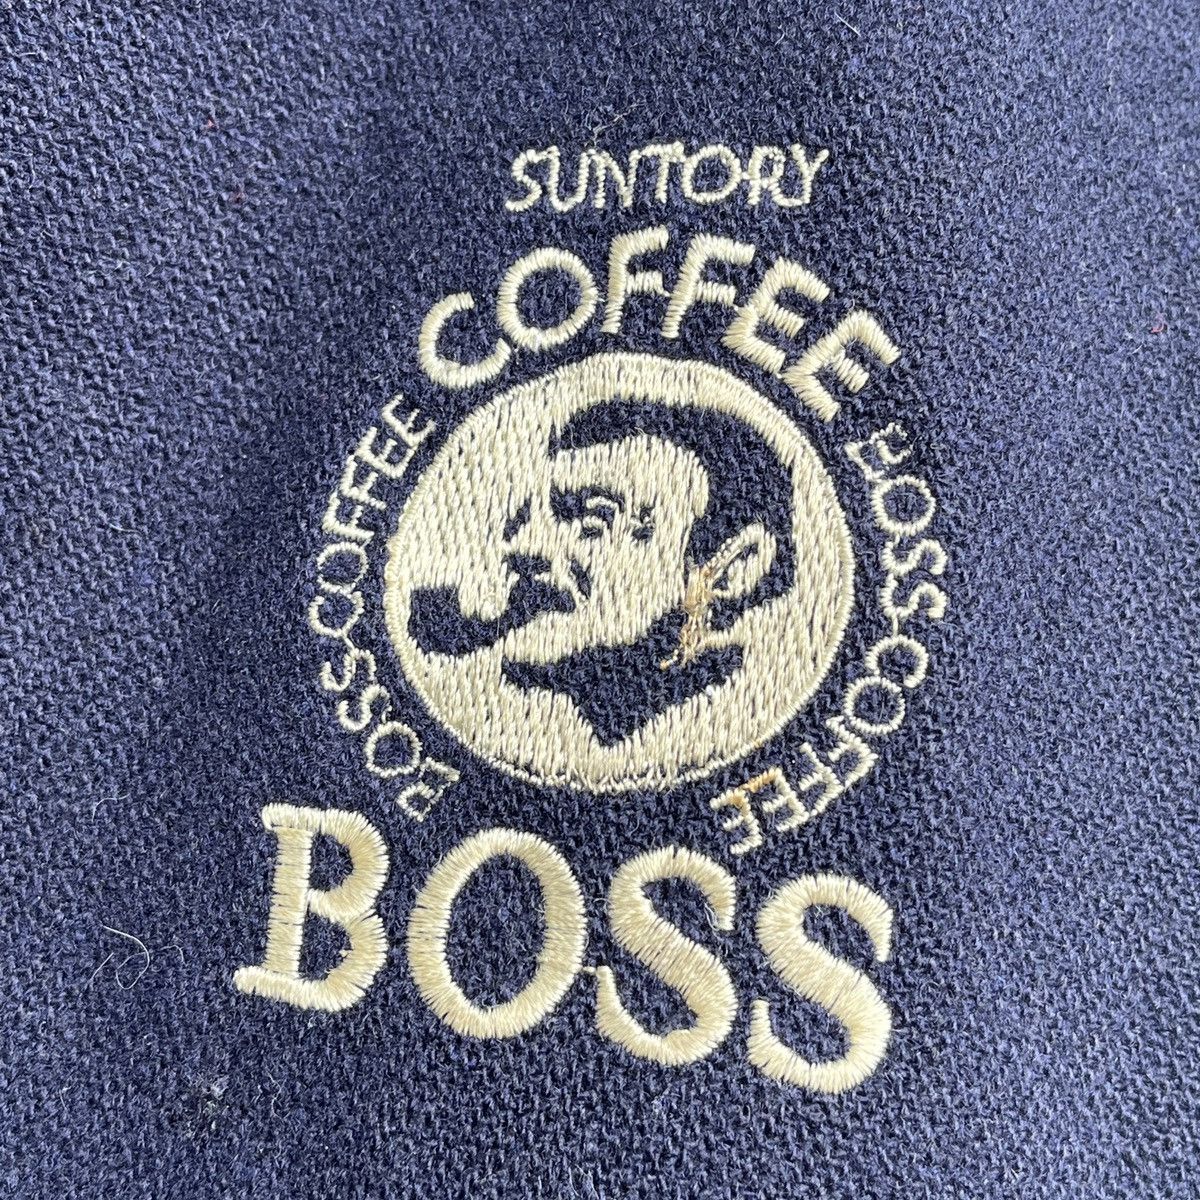 Vintage - Japan Leather Suntory Coffee Boss Varsity Jacket - 6